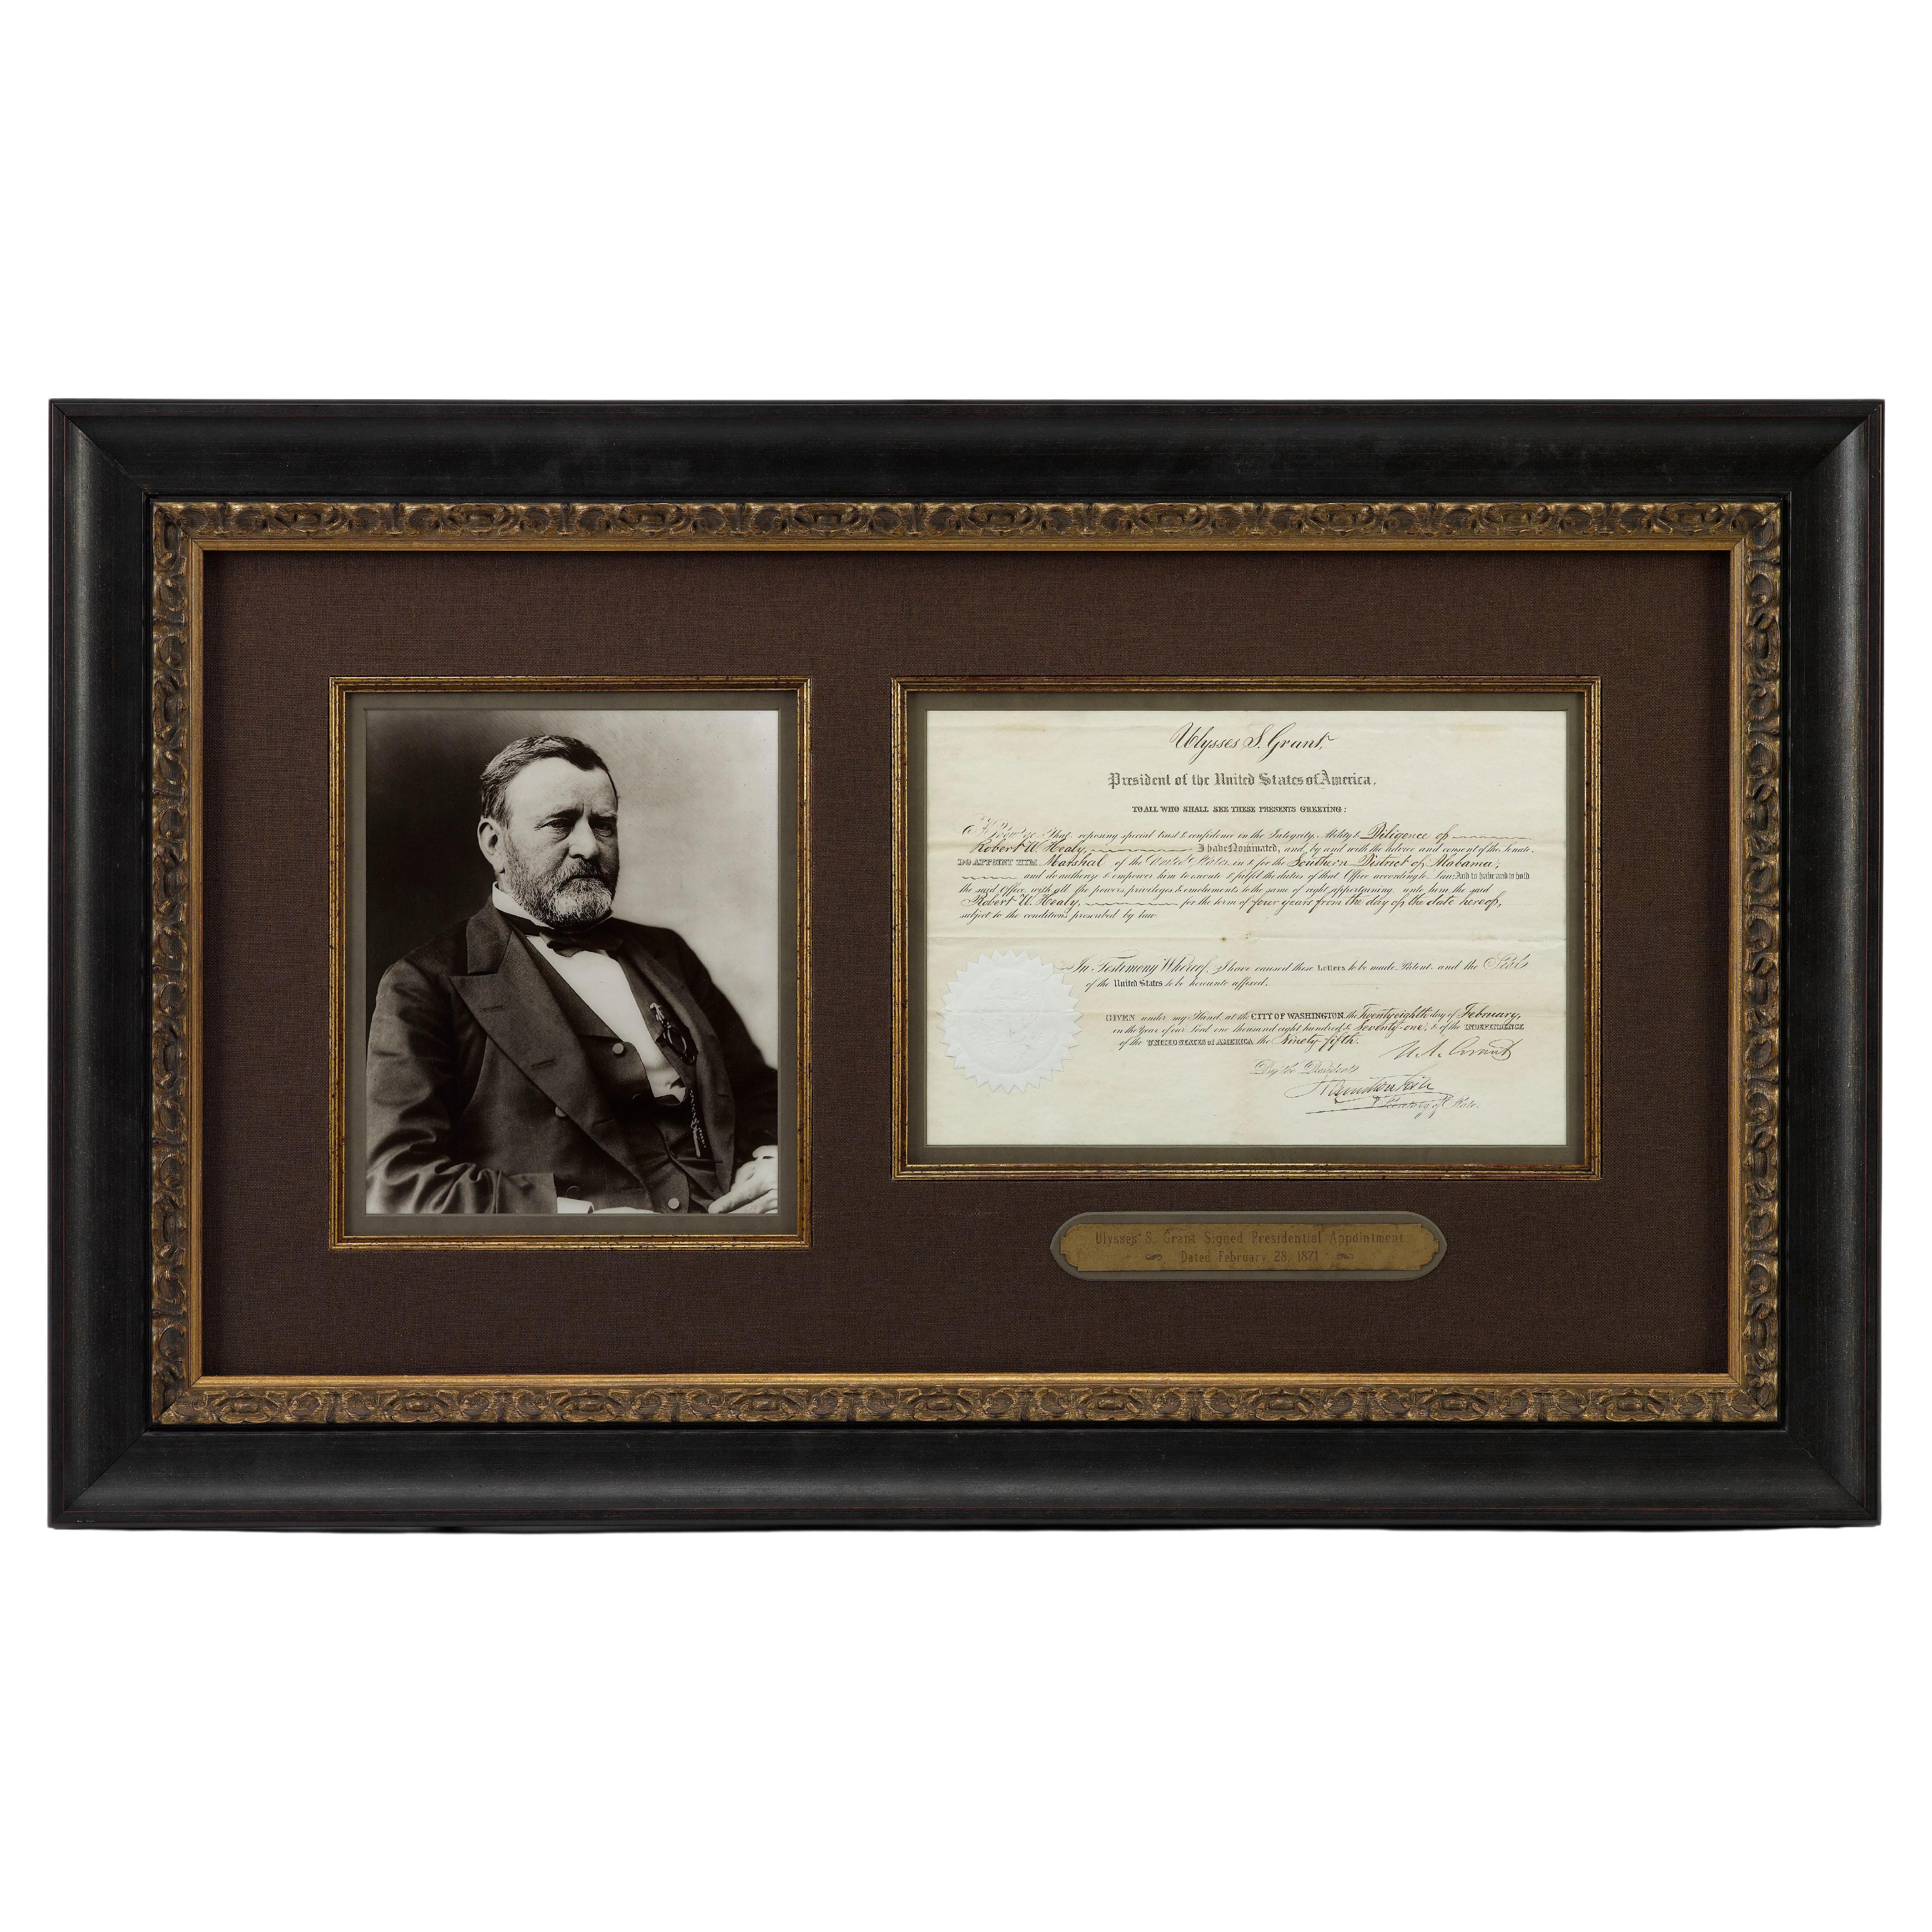 Voici une nomination présidentielle originale signée par Ulysses S. Grant, datant du 28 février 1871. Signé au cours du premier mandat de Grant, le document nomme 